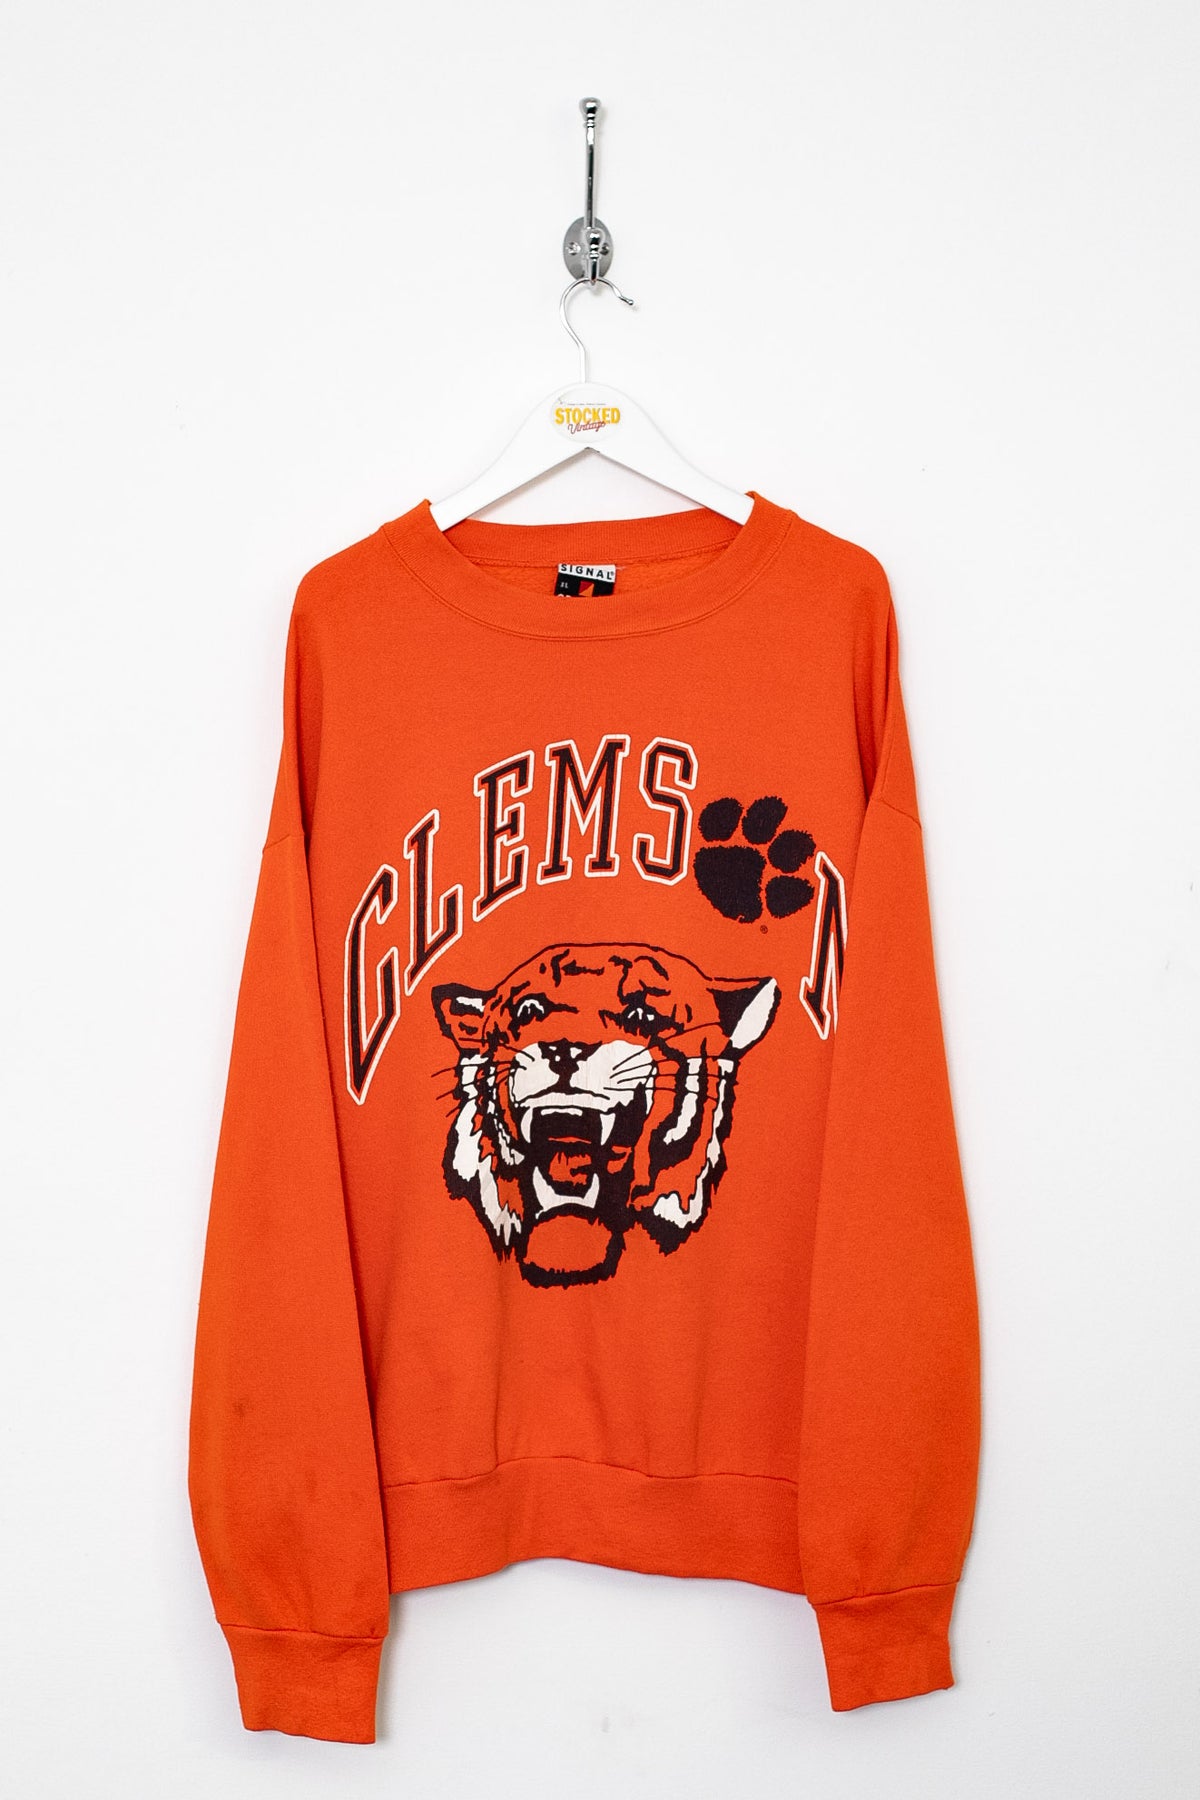 00s Clemson Tigers Sweatshirt (M)